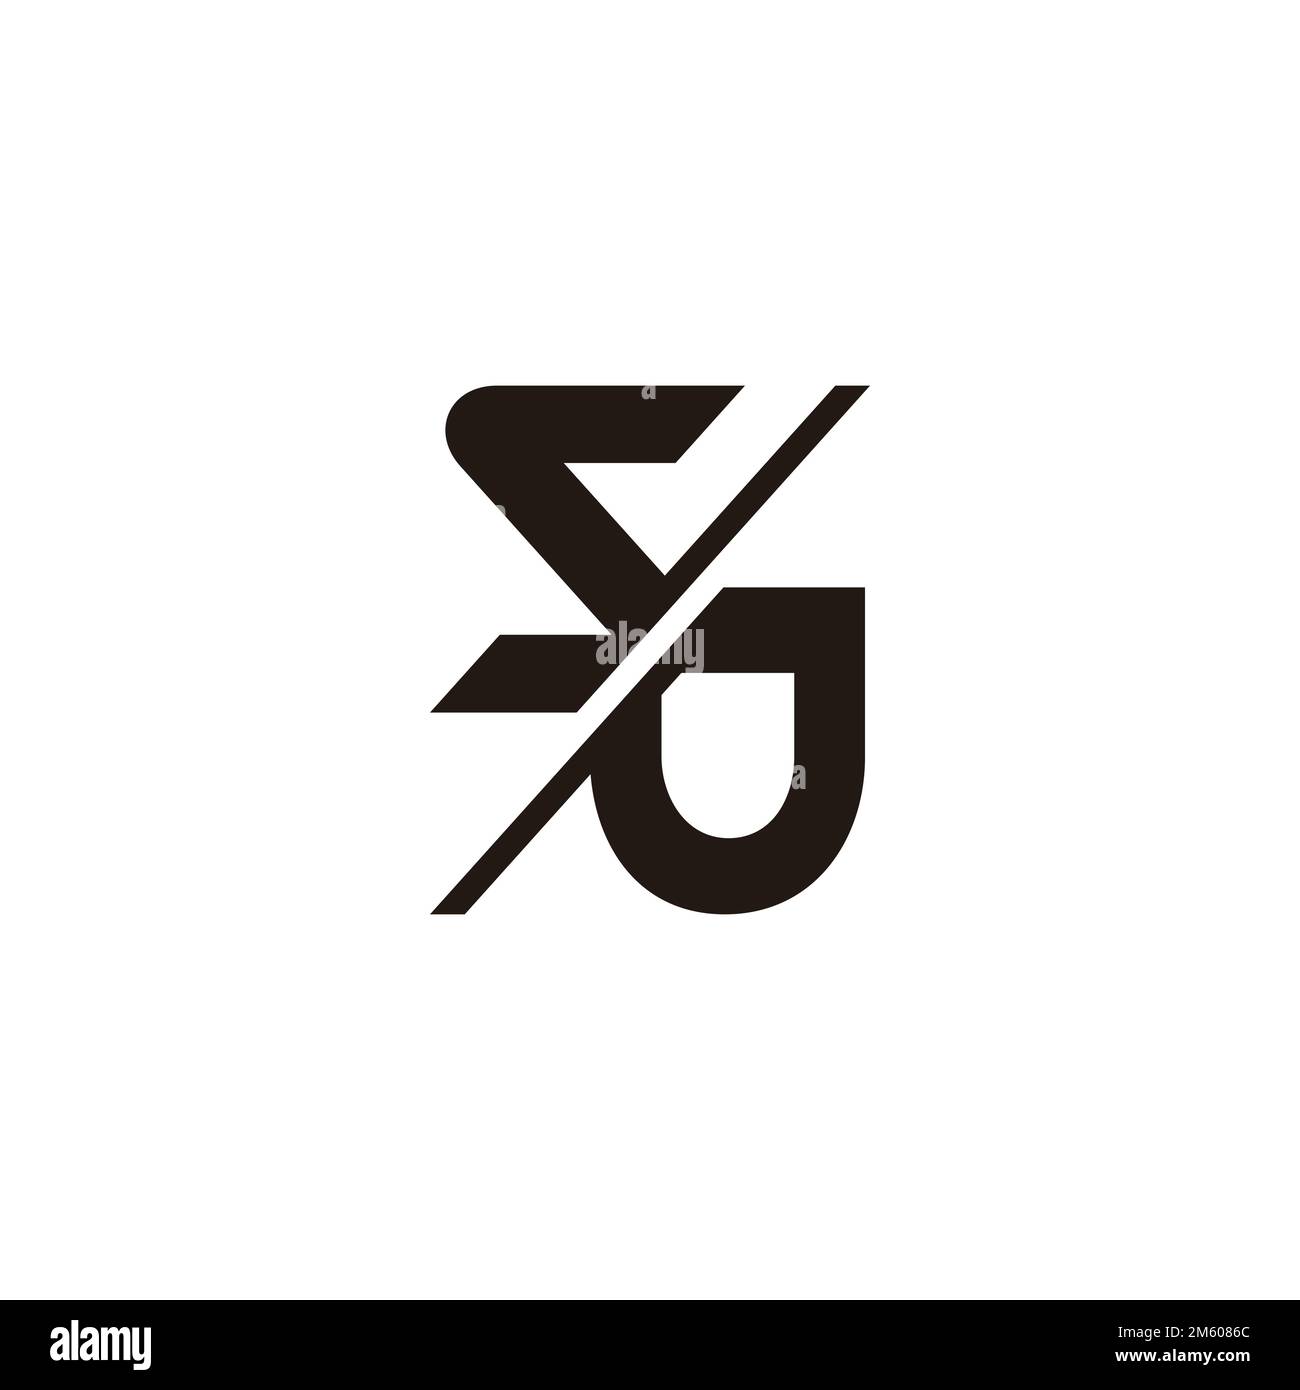 letter sd sj slice motion logo vector Stock Vector